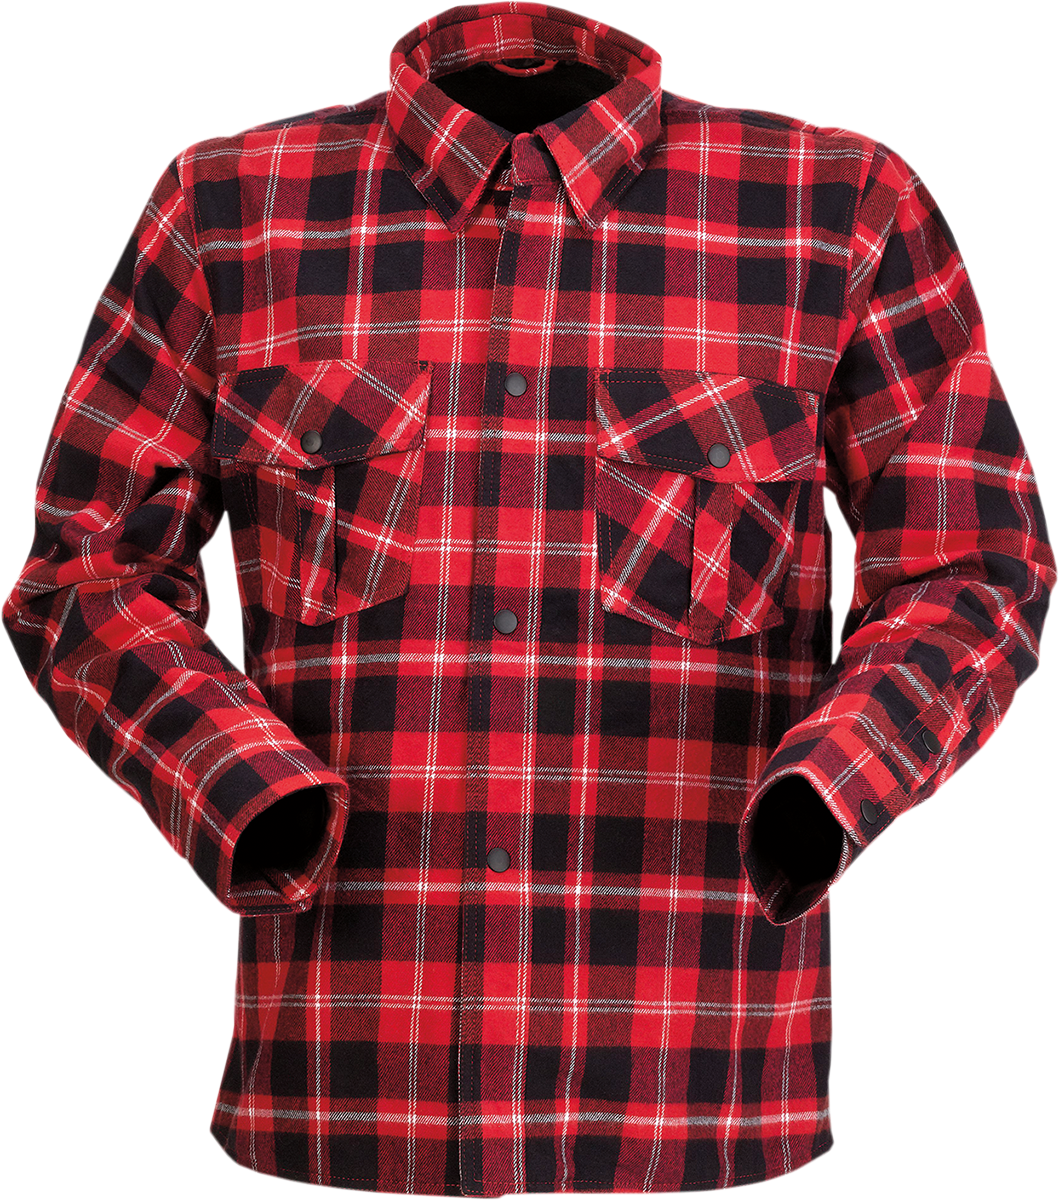 Z1R Duke Plaid Flannel Shirt - Red/Black - 2XL 3040-3053